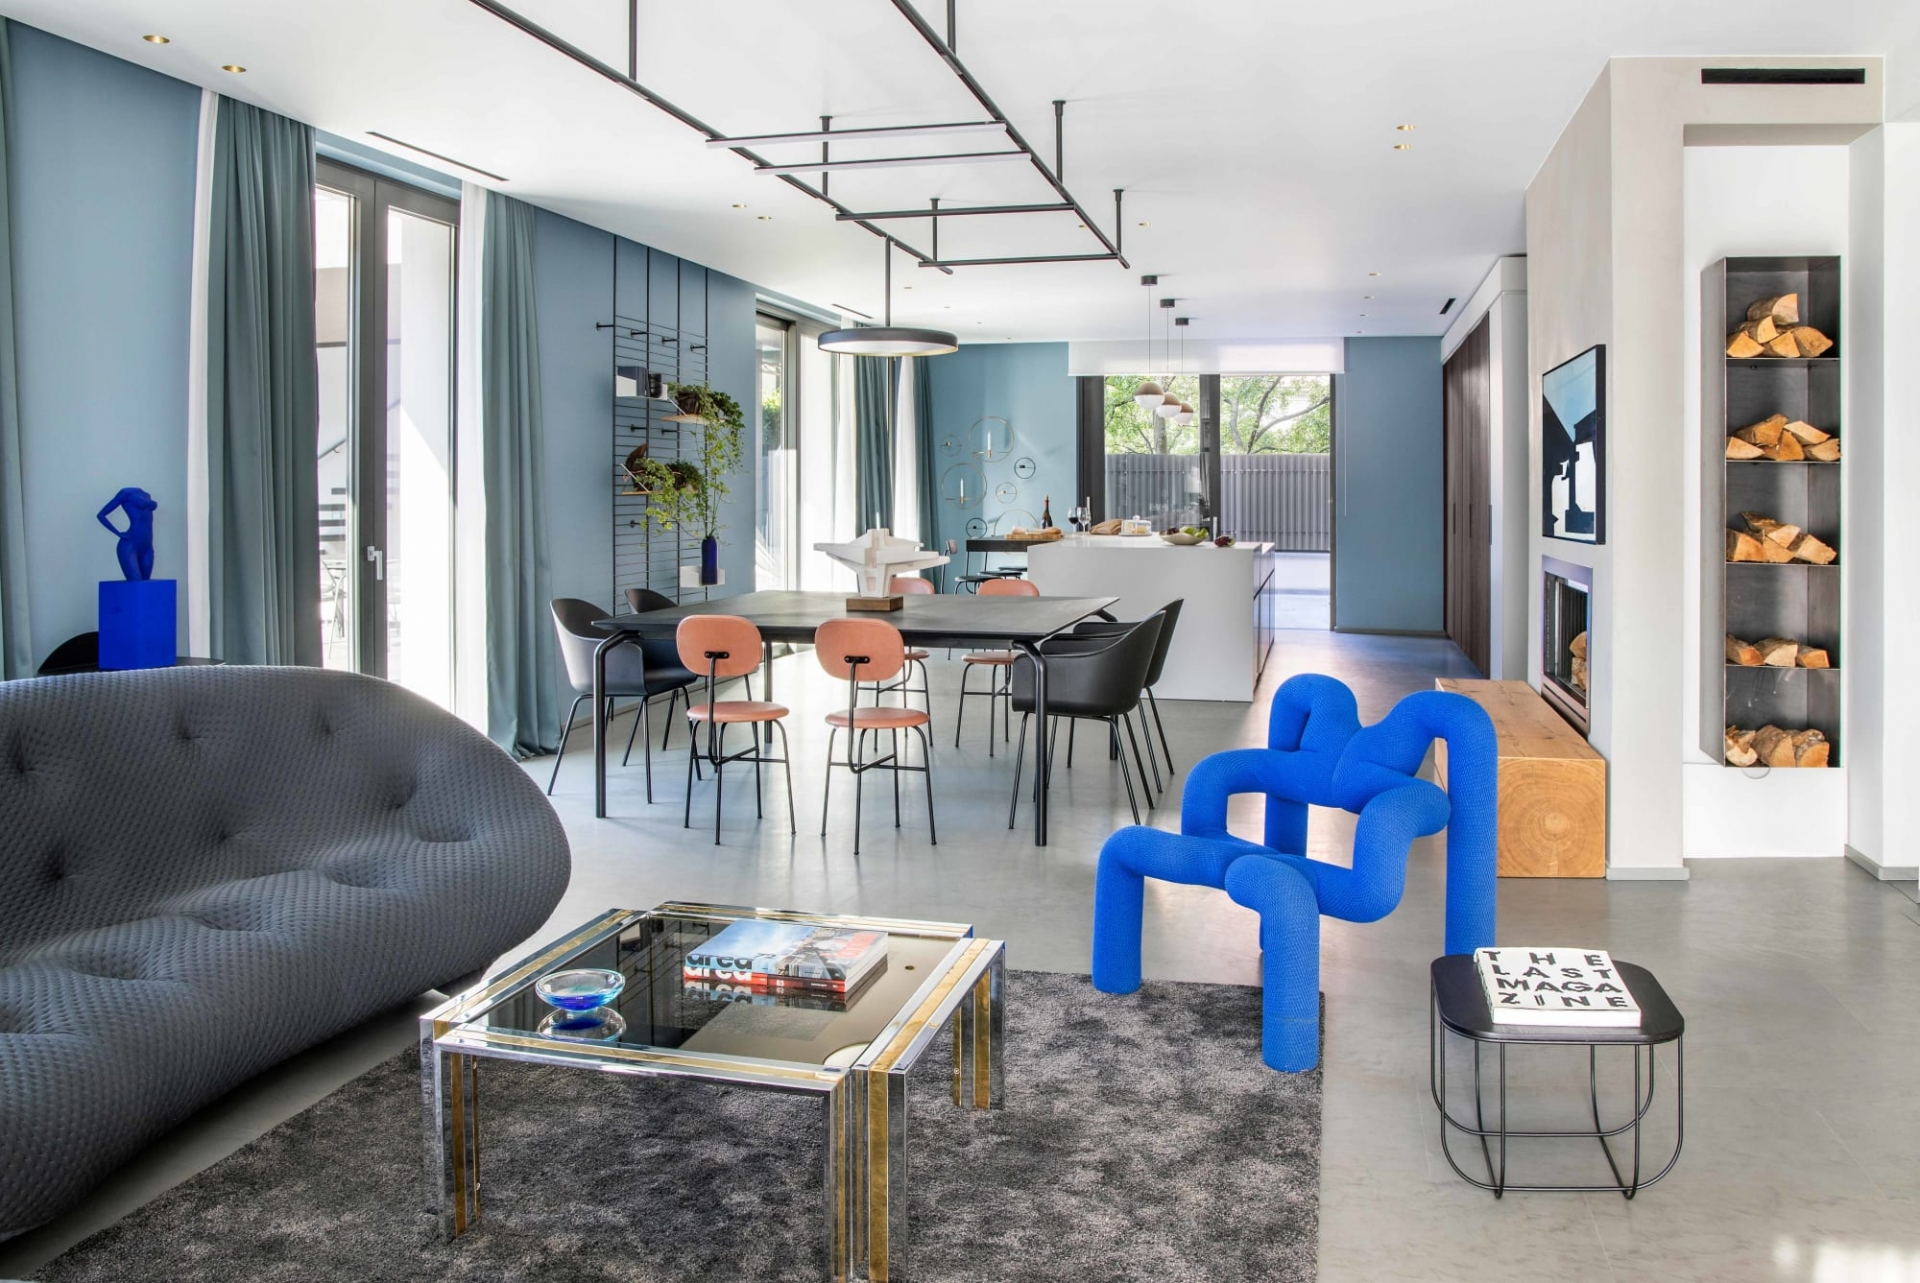 Để đáp ứng mong muốn sở hữu một không gian nghỉ dưỡng sang trọng và hiện đại, các kiến trúc sư đã lựa chọn gam màu xanh lam và xám là tông màu chủ đạo để toát lên sự thanh lịch và vẫn trẻ trung năng động. 